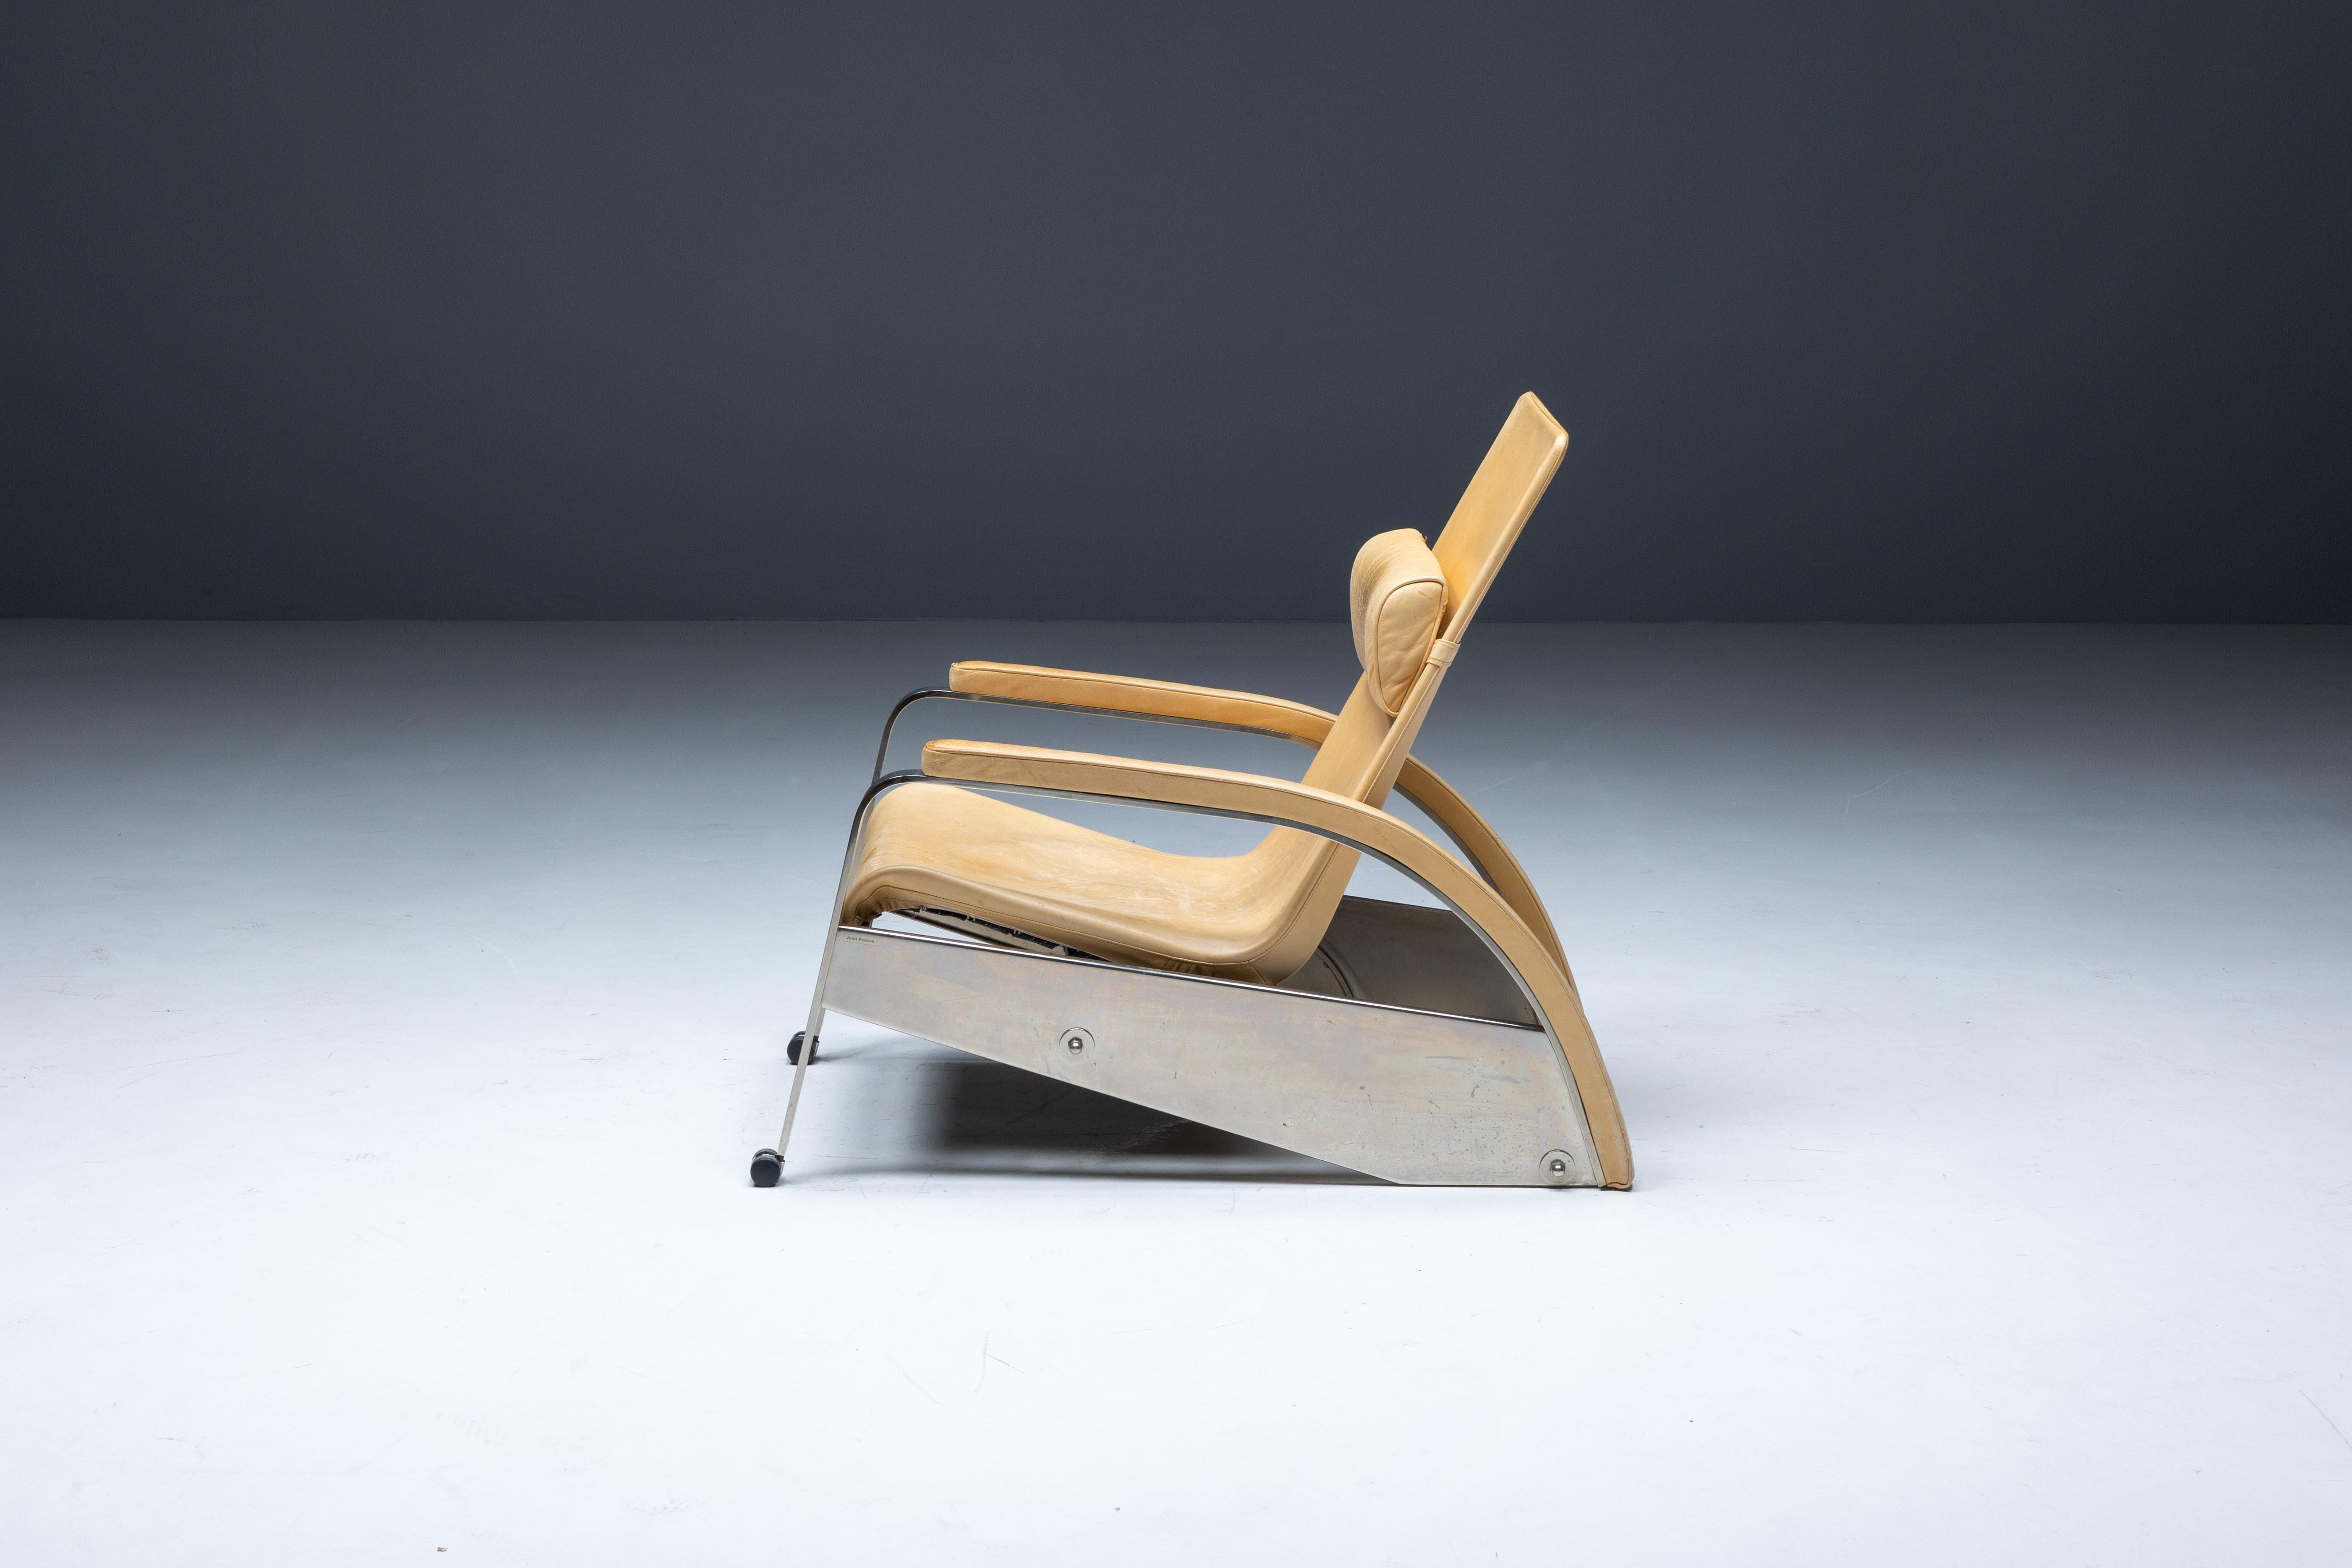 Grand Repos D80 Lounge Chair von Jean Prouvé, ein zeitloses Möbelstück, das die Essenz des Modernismus und des Industriedesigns verkörpert. Dieser ikonische Stuhl wurde zwischen 1928 und 1930 entworfen und ist ein Beispiel für Prouvés Meisterschaft